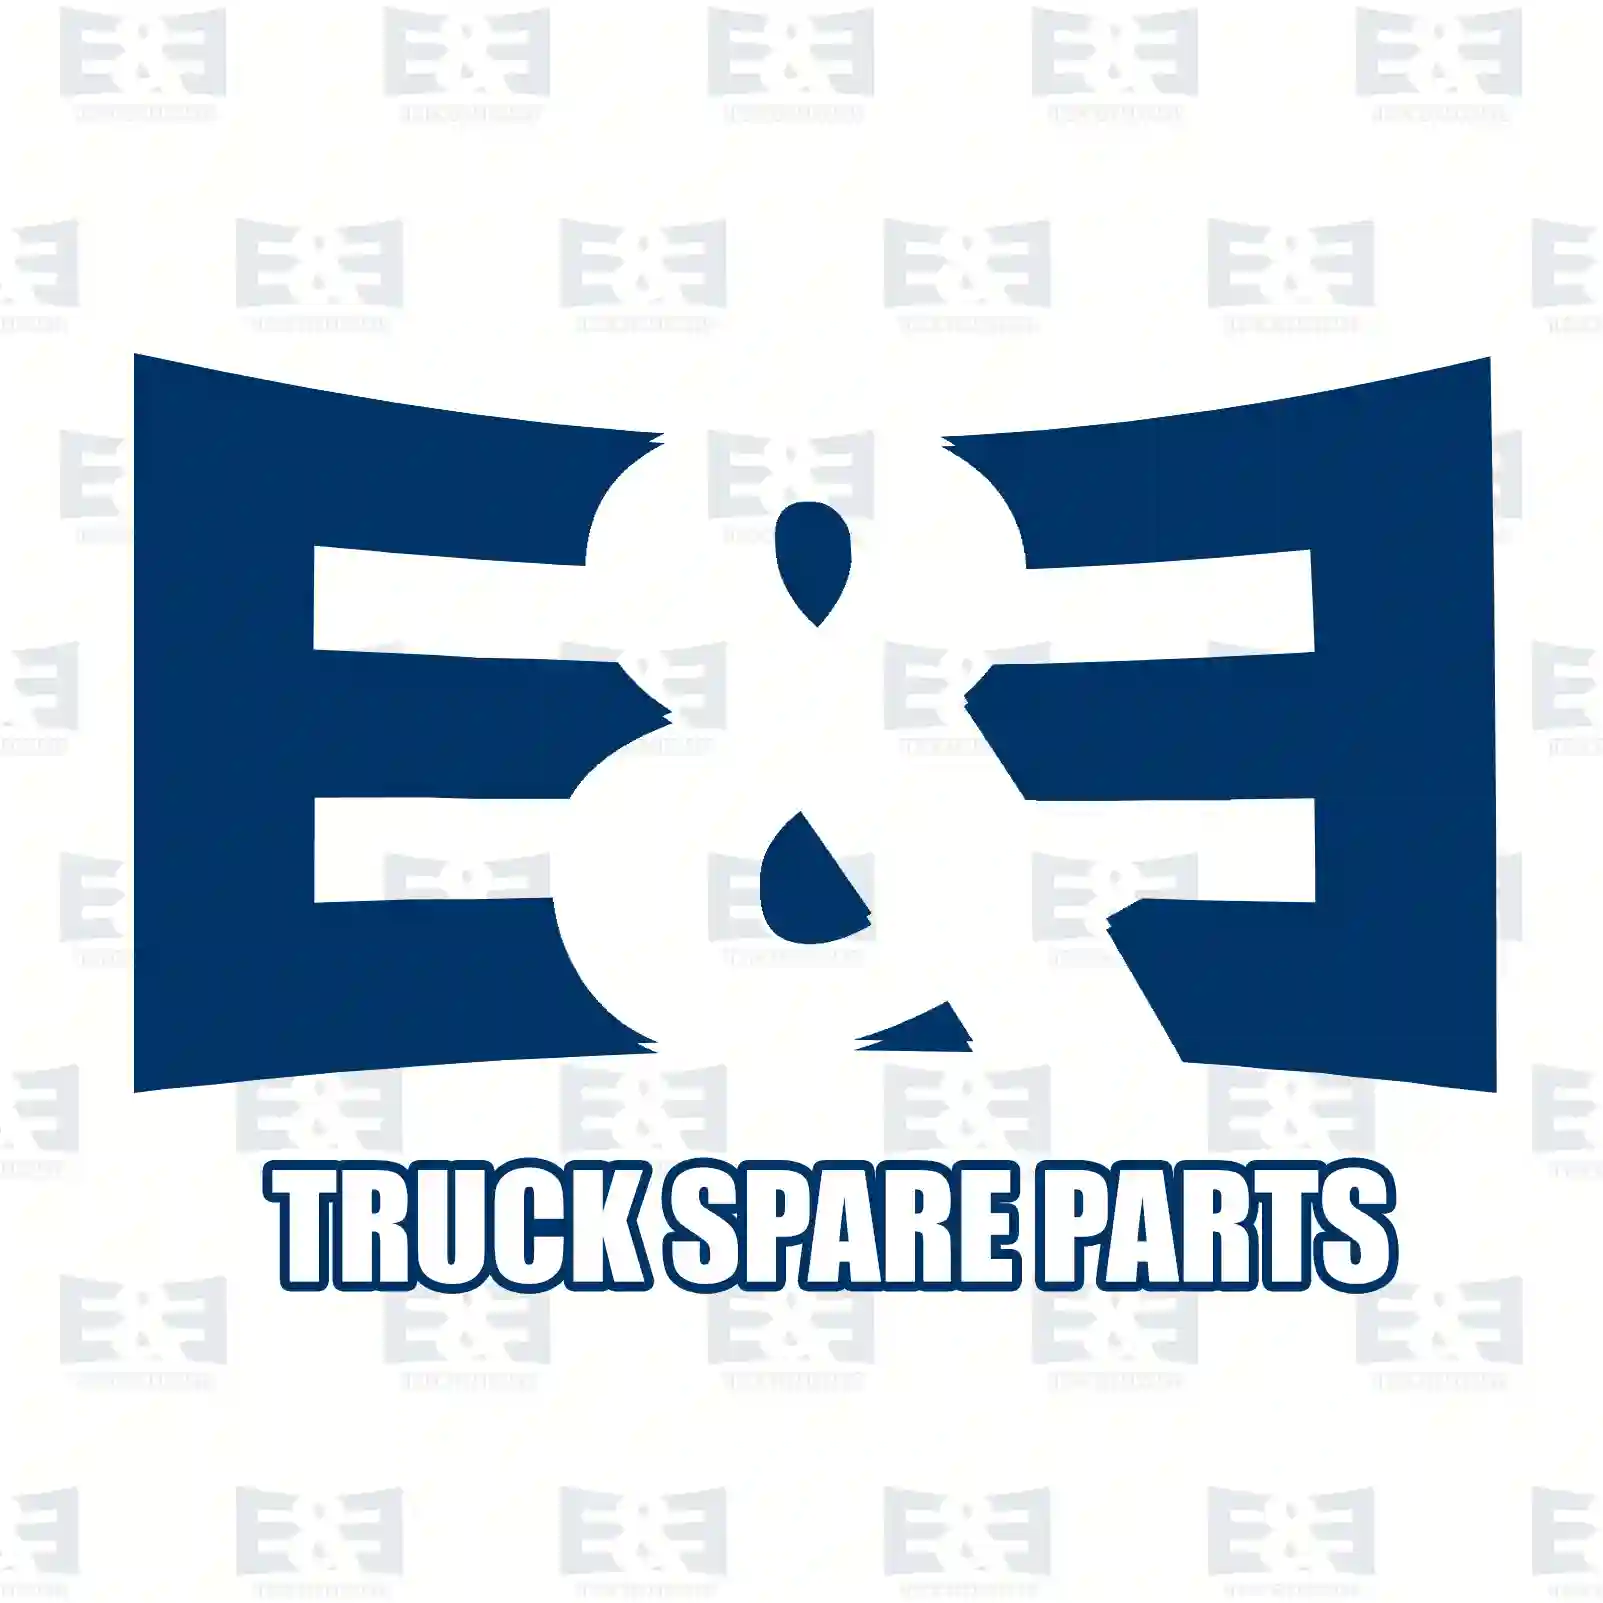 Brake disc, 2E2294871, 5010260218, 5010260218, , , , , , ||  2E2294871 E&E Truck Spare Parts | Truck Spare Parts, Auotomotive Spare Parts Brake disc, 2E2294871, 5010260218, 5010260218, , , , , , ||  2E2294871 E&E Truck Spare Parts | Truck Spare Parts, Auotomotive Spare Parts